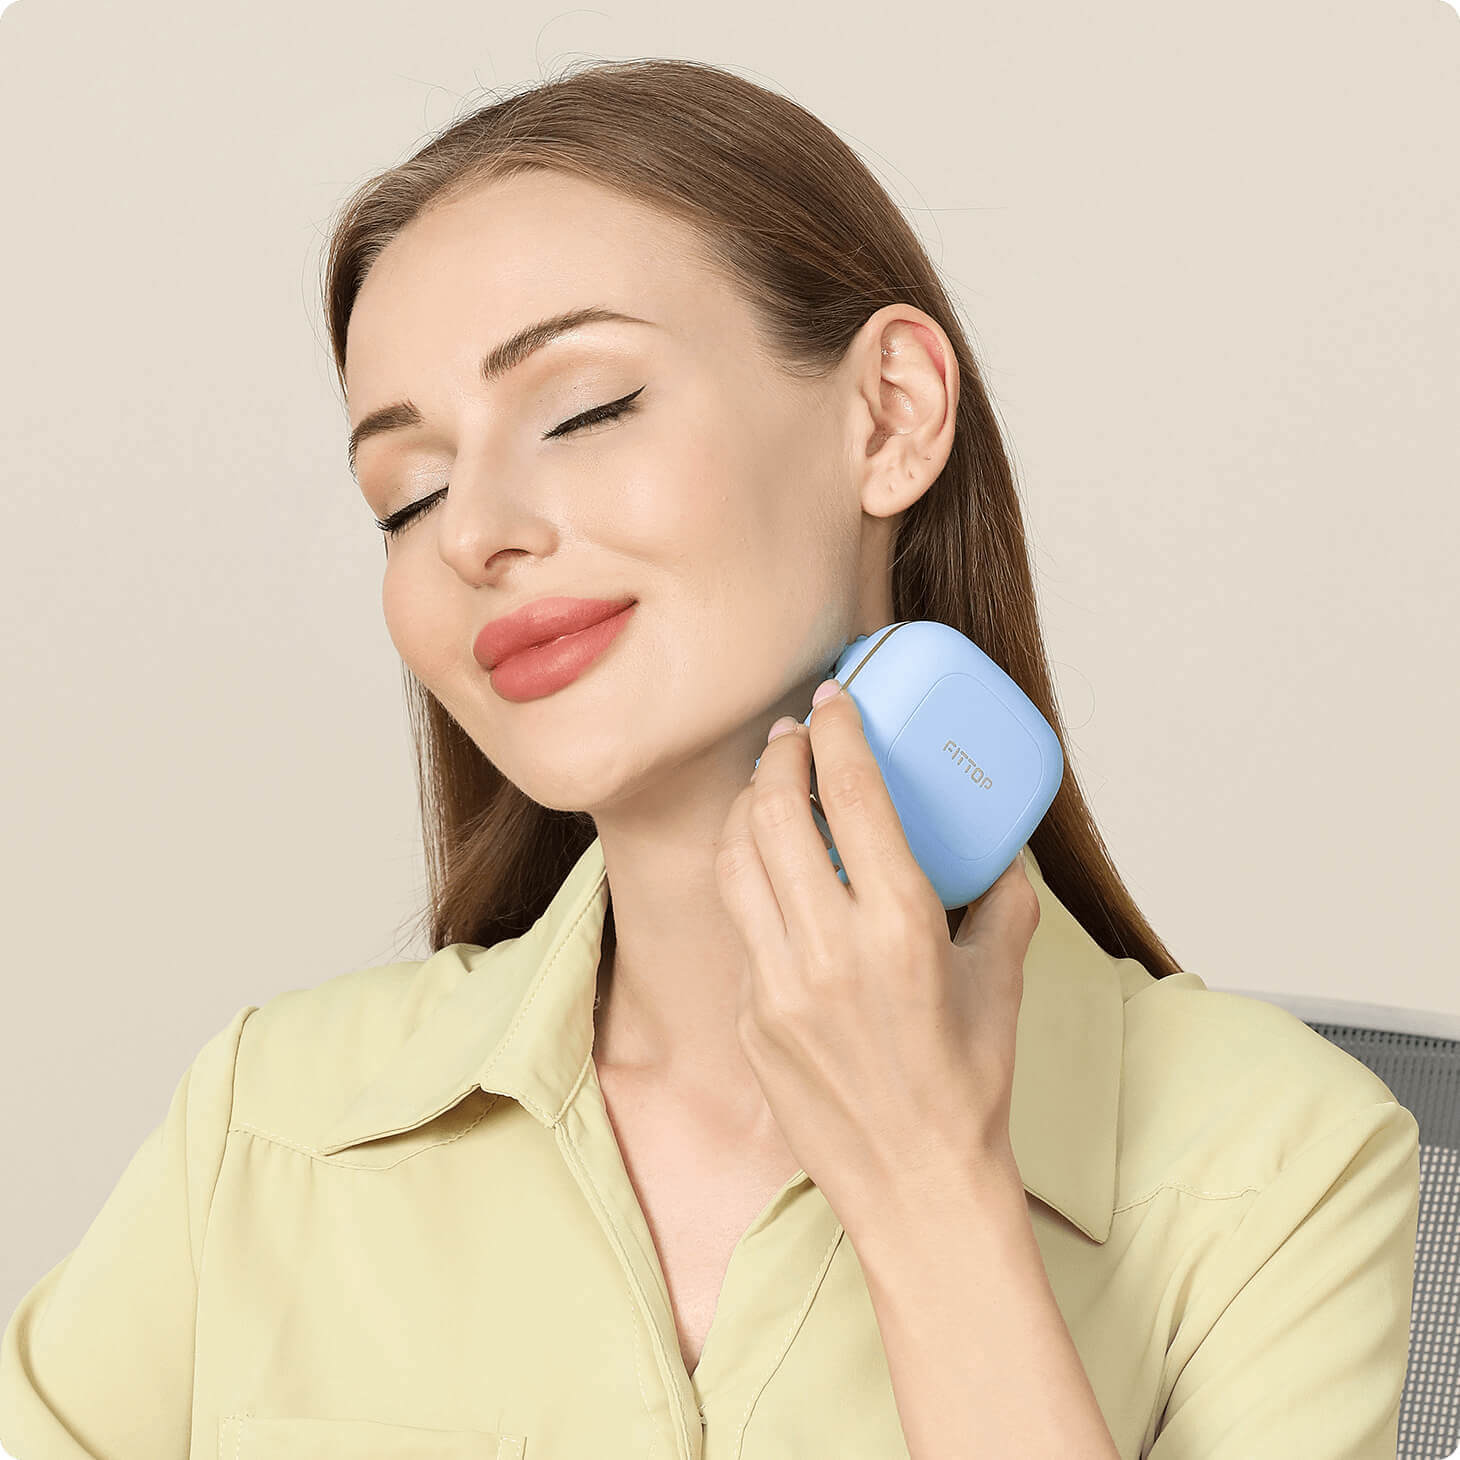 M-HAND Intelligent Handheld Massager